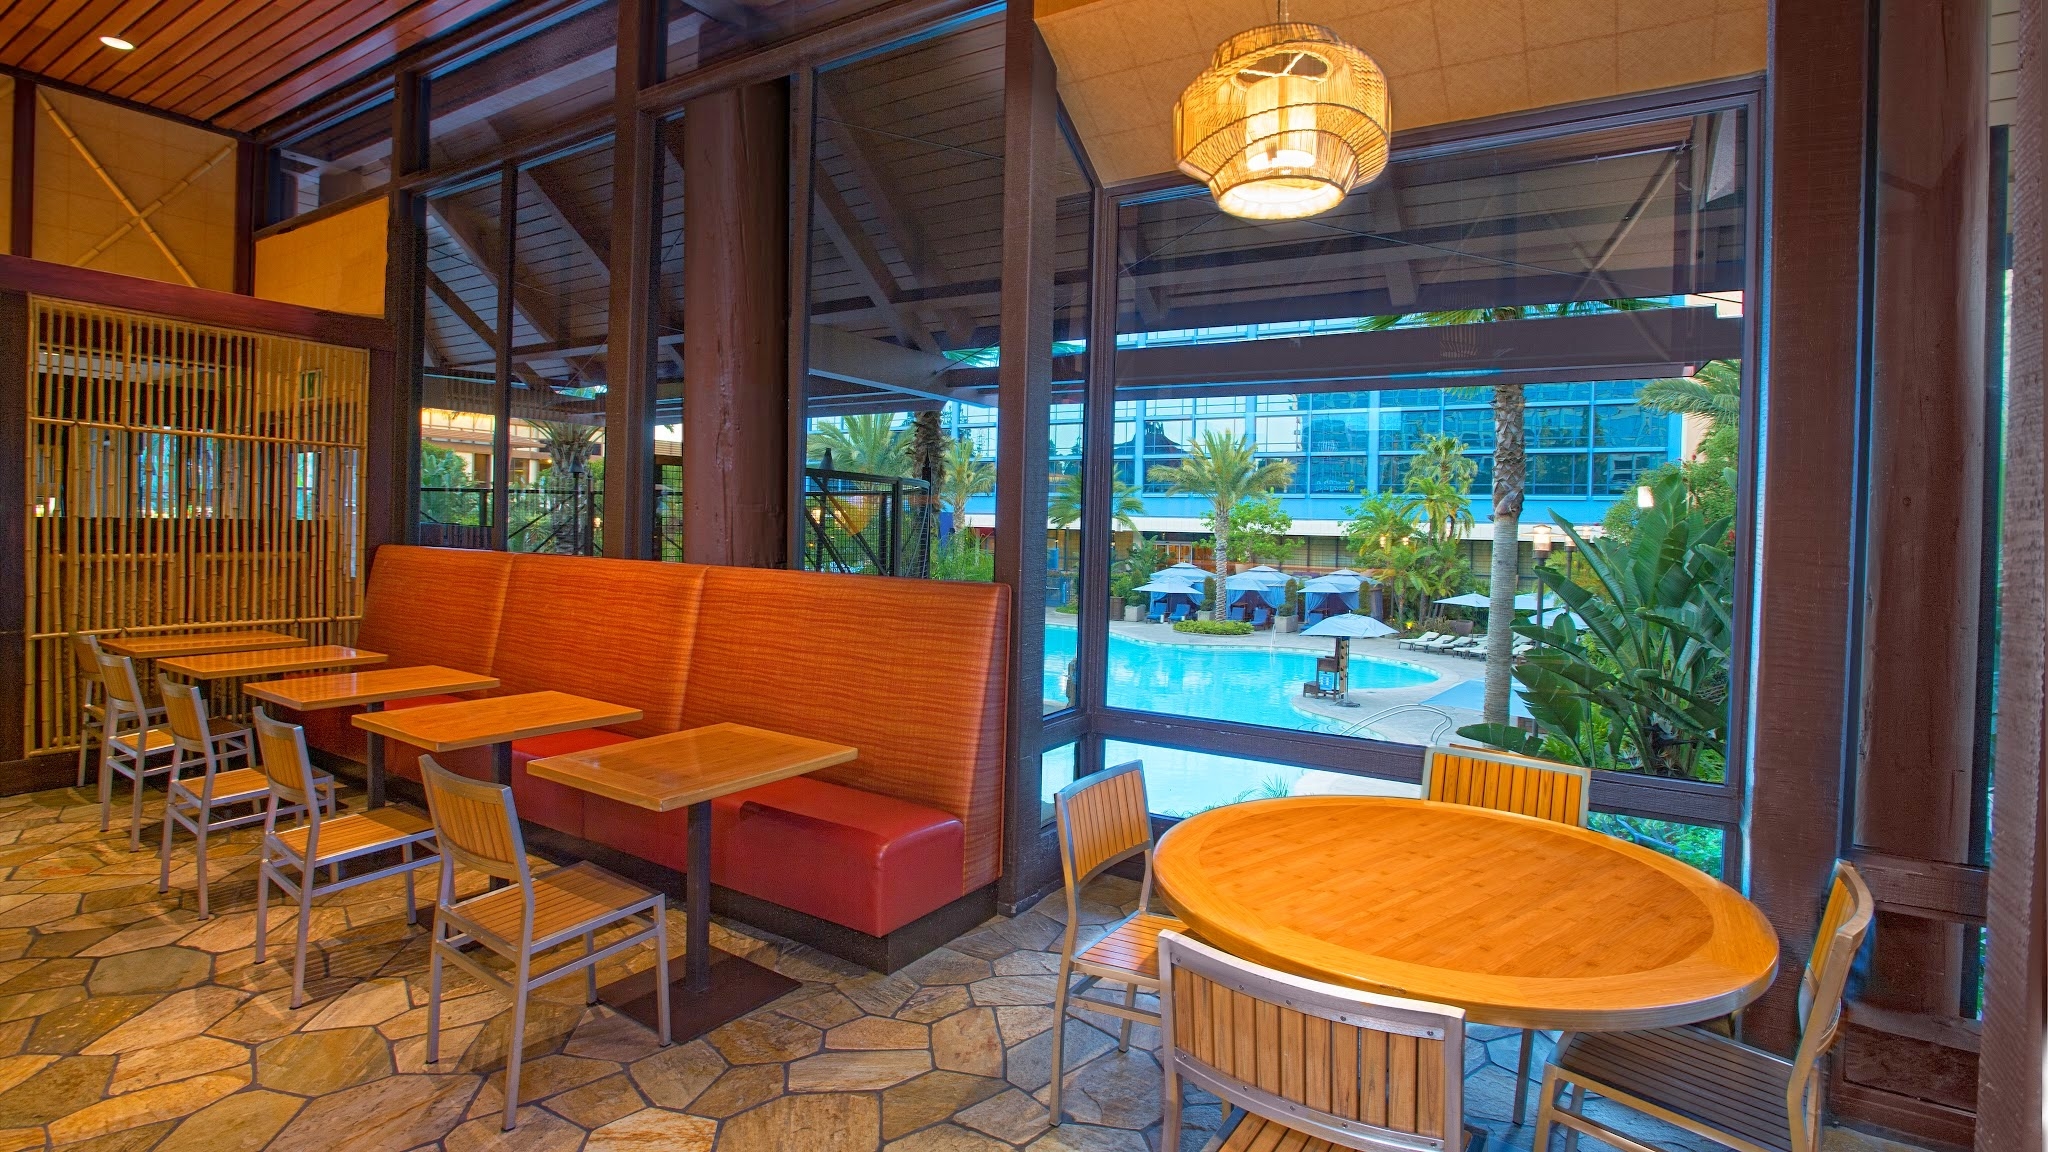 Tangaroa Terrace Tropical Bar & Grill Photo